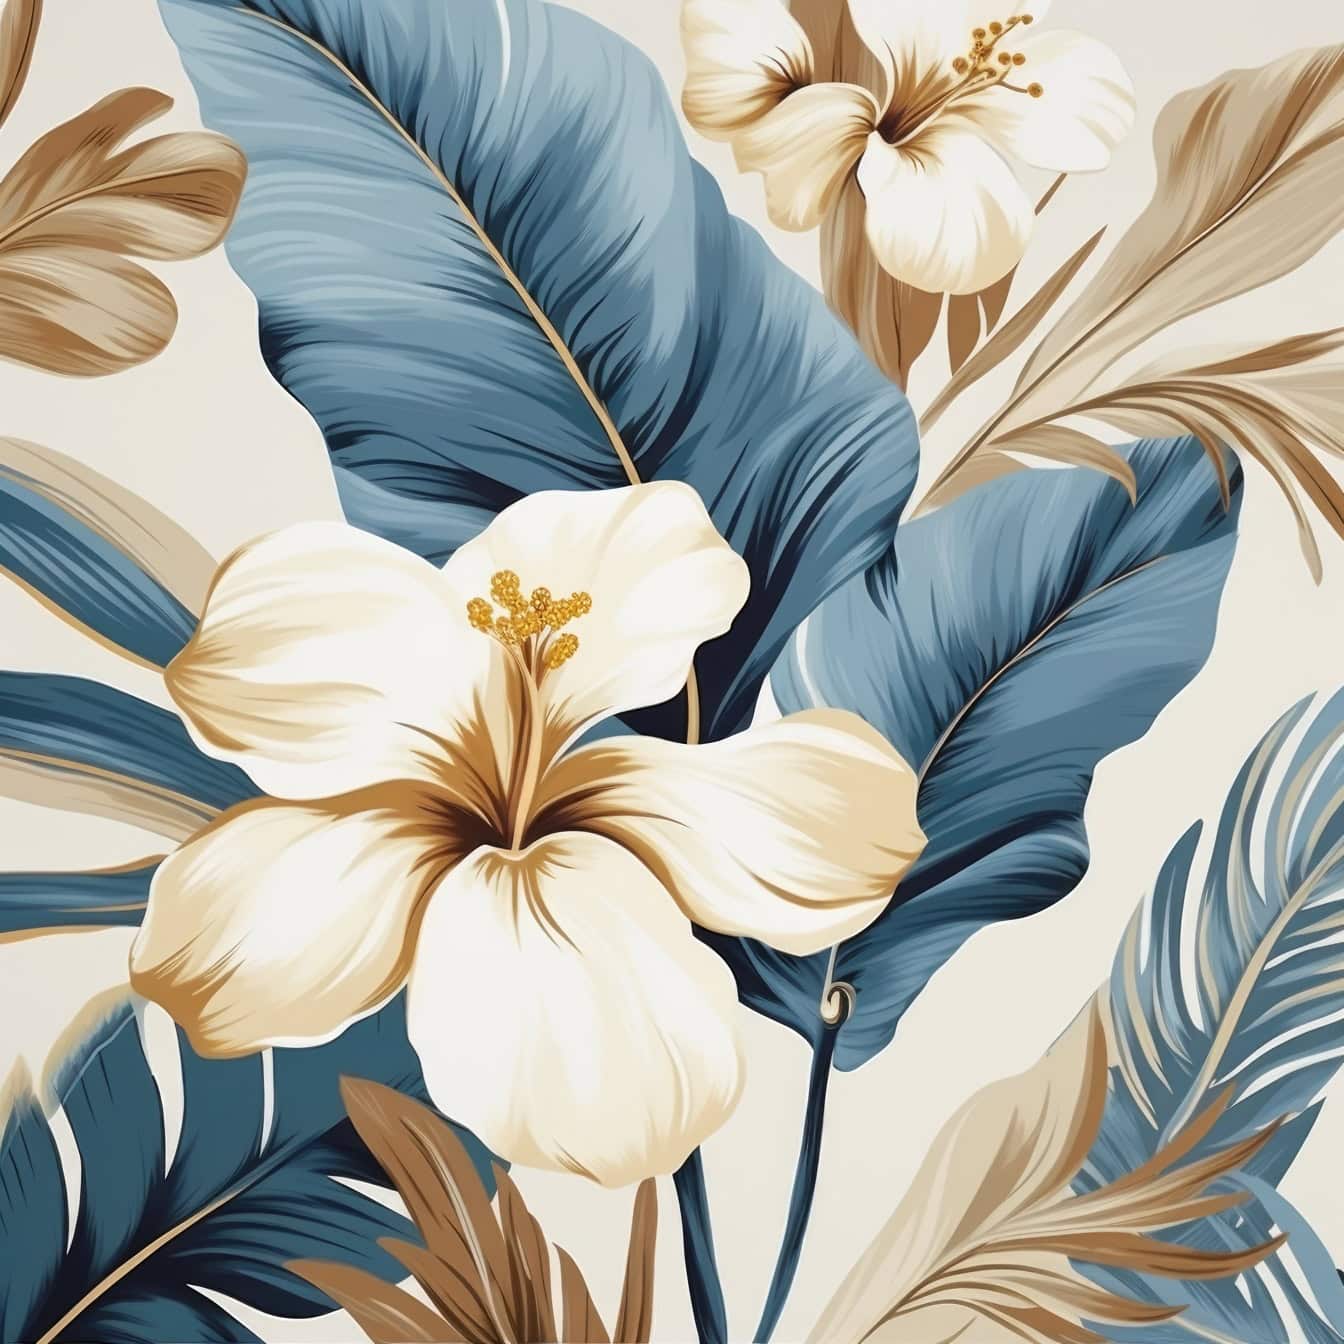 Cvjetna grafička ilustracija cvjetova i lišća ljiljana u izblijedjelim pastelno plavim i žućkastim tonovima